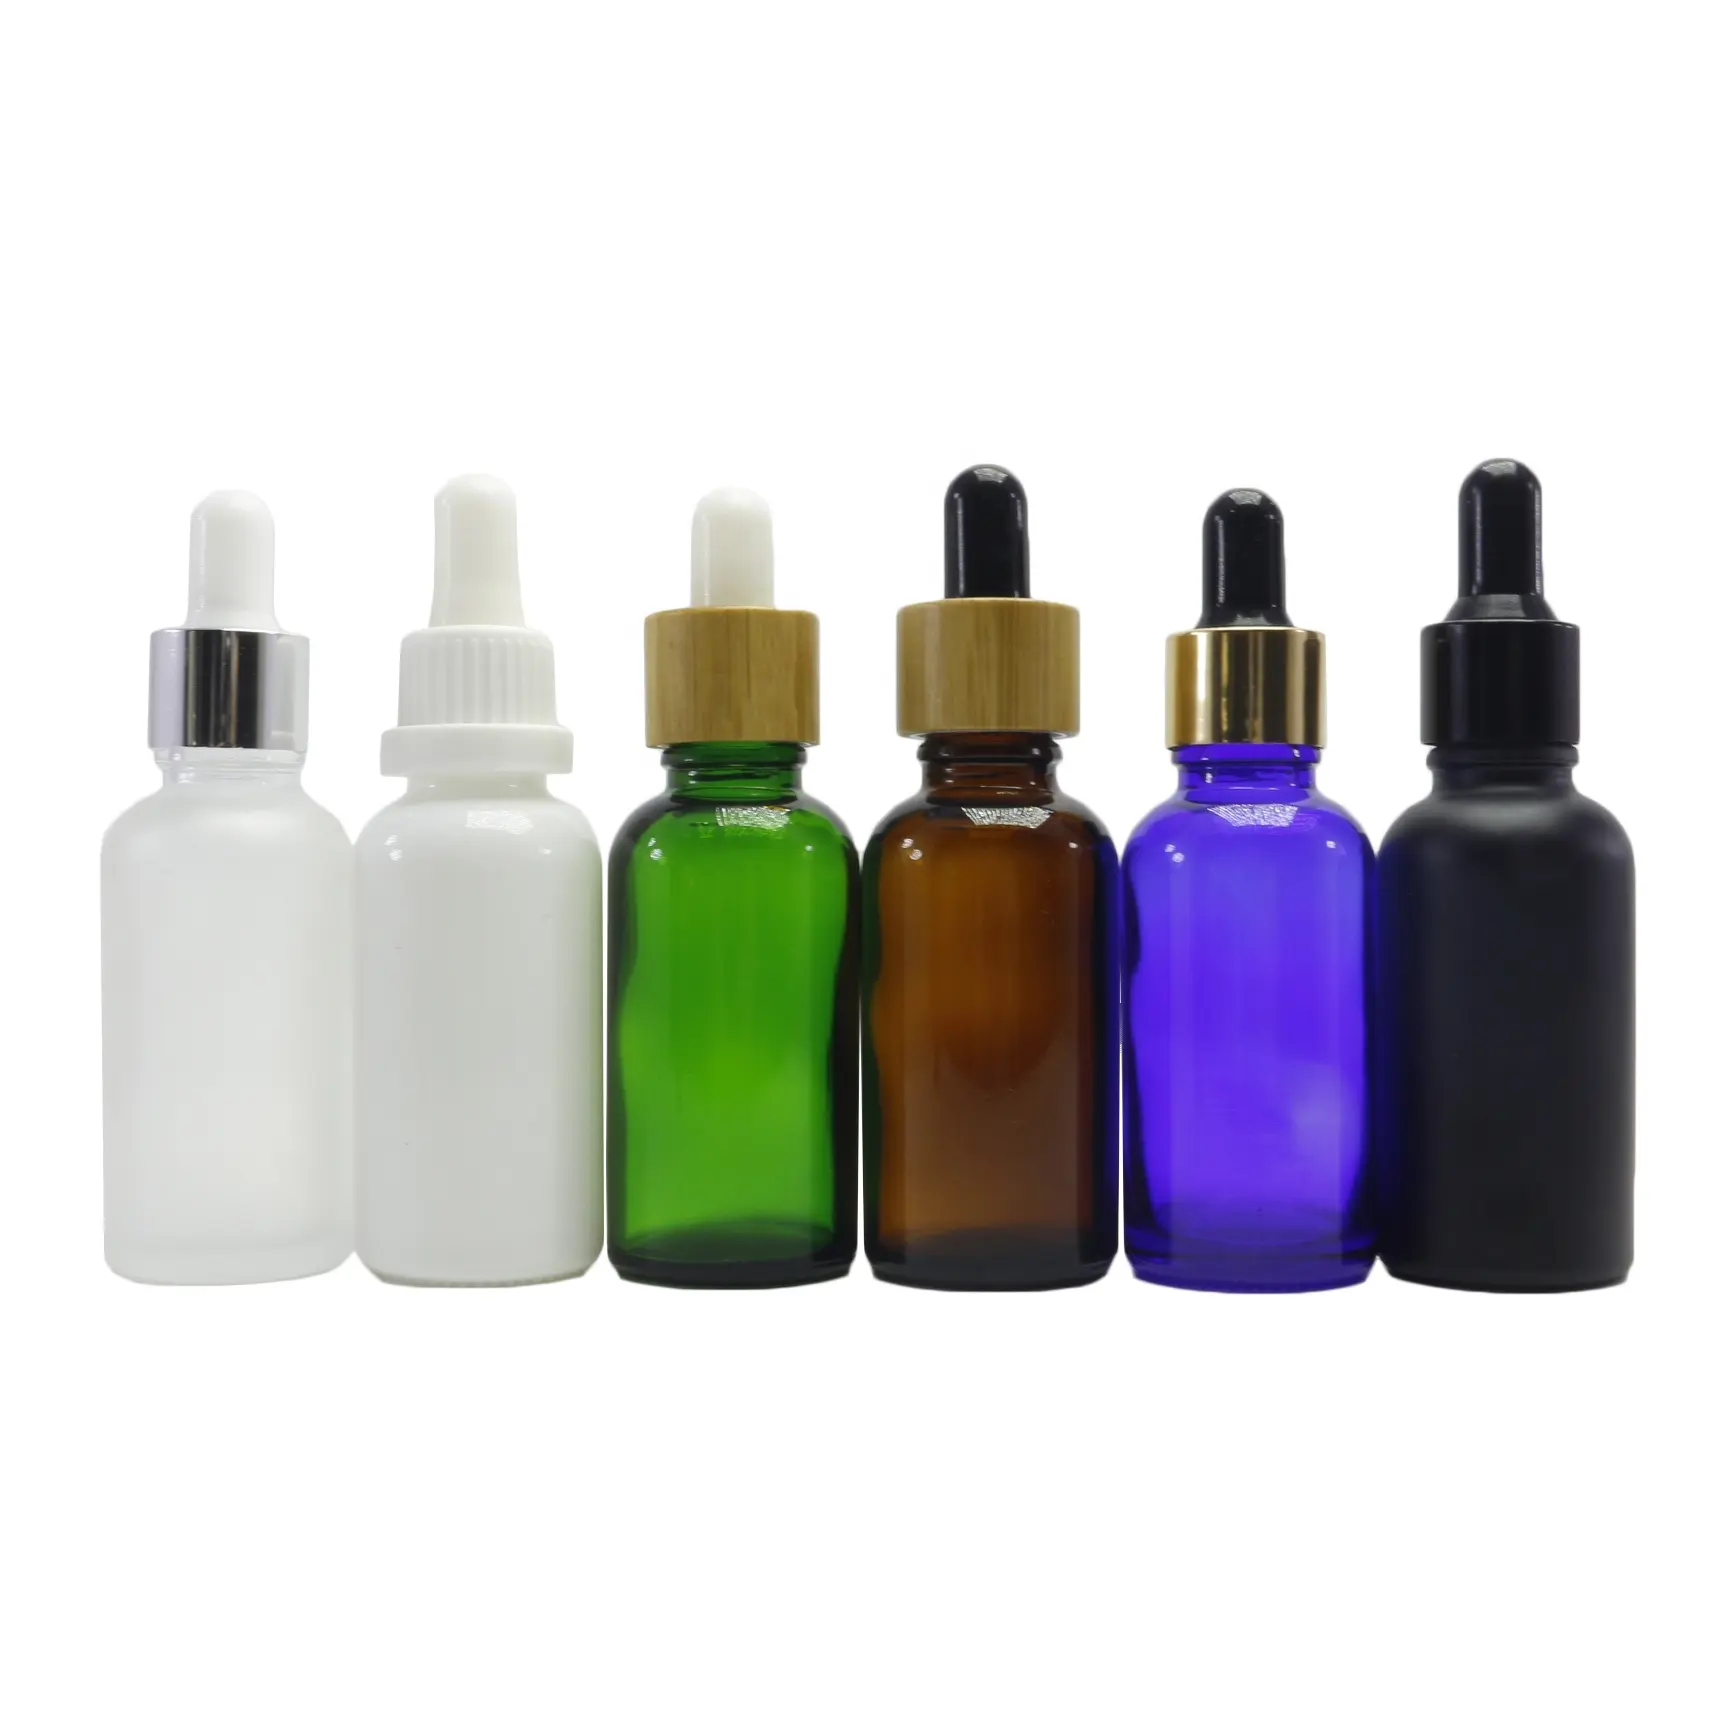 5ml 10ml 15ml 20ml 30ml 50ml 60ml 100ml perfume essential oil serum glass dropper bottle cosmetic GB-125B